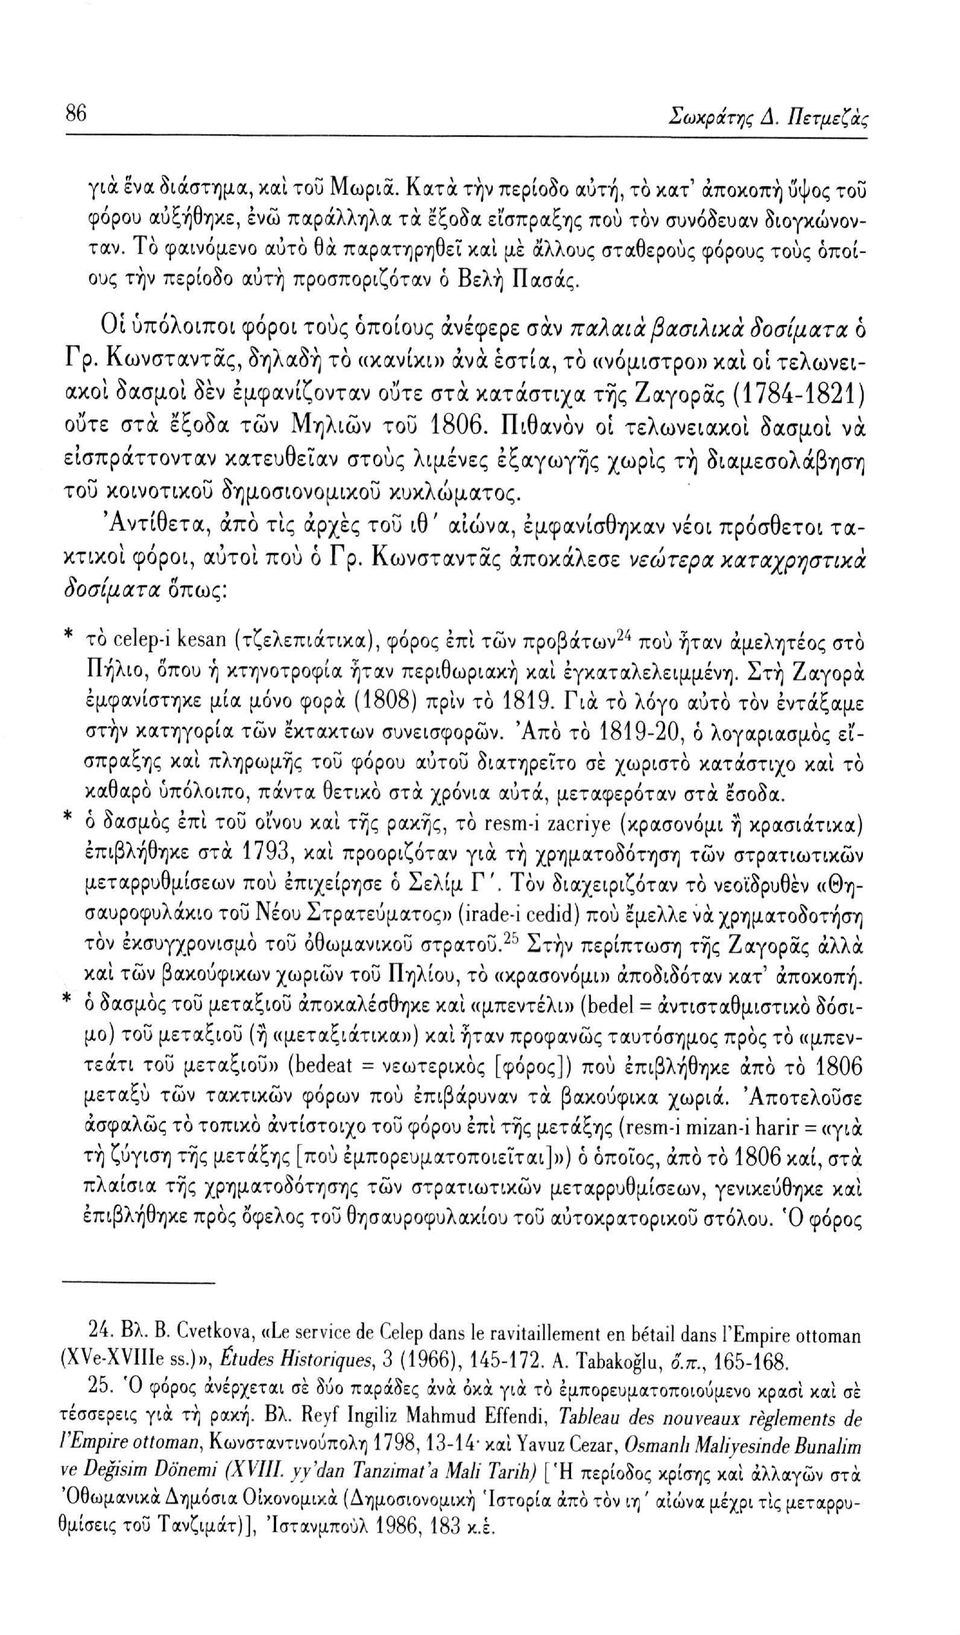 Κωνσταντας, δηλαδή το «κανίκι» ανά εστία, το ανόμιστρο» και οι τελωνειακοί δασμοί δεν εμφανίζονταν ούτε στα κατάστιχα της Ζαγοράς (1784-1821) ούτε στα έξοδα των Μηλιών του 1806.